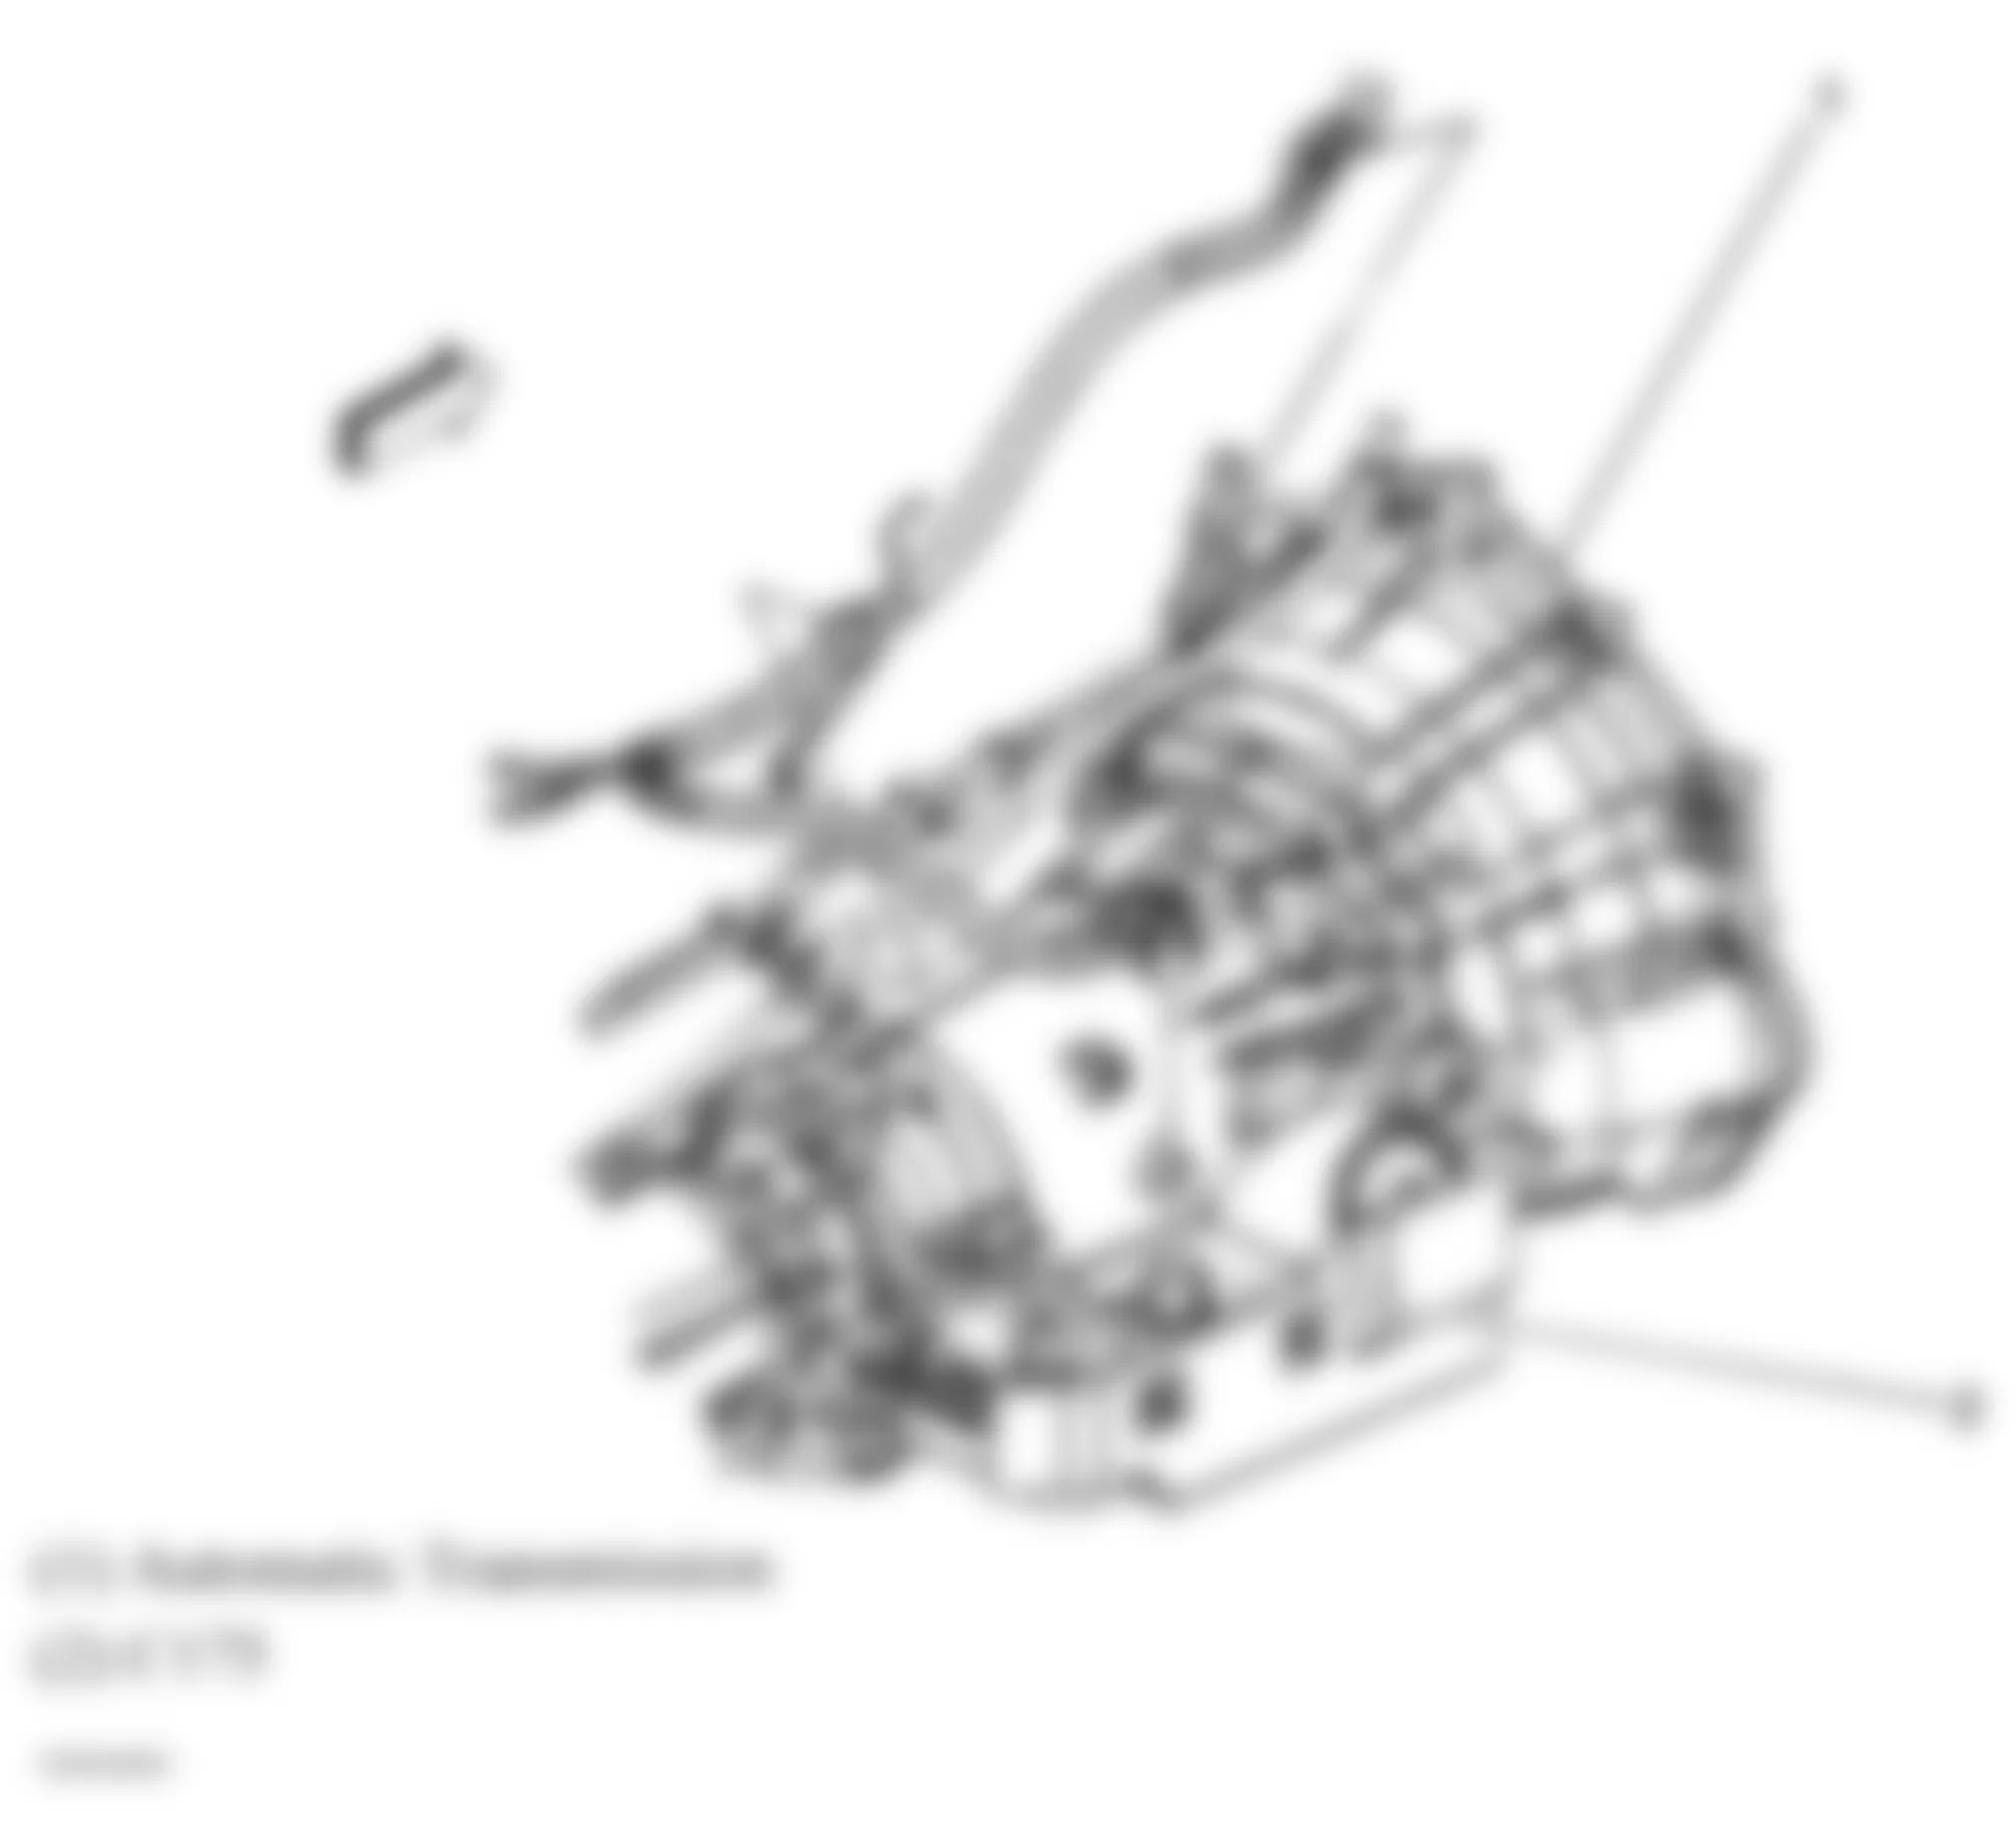 GMC Savana G3500 2007 - Component Locations -  Rear Of Transmission (4L60-E/4L65-E/4L70-E)